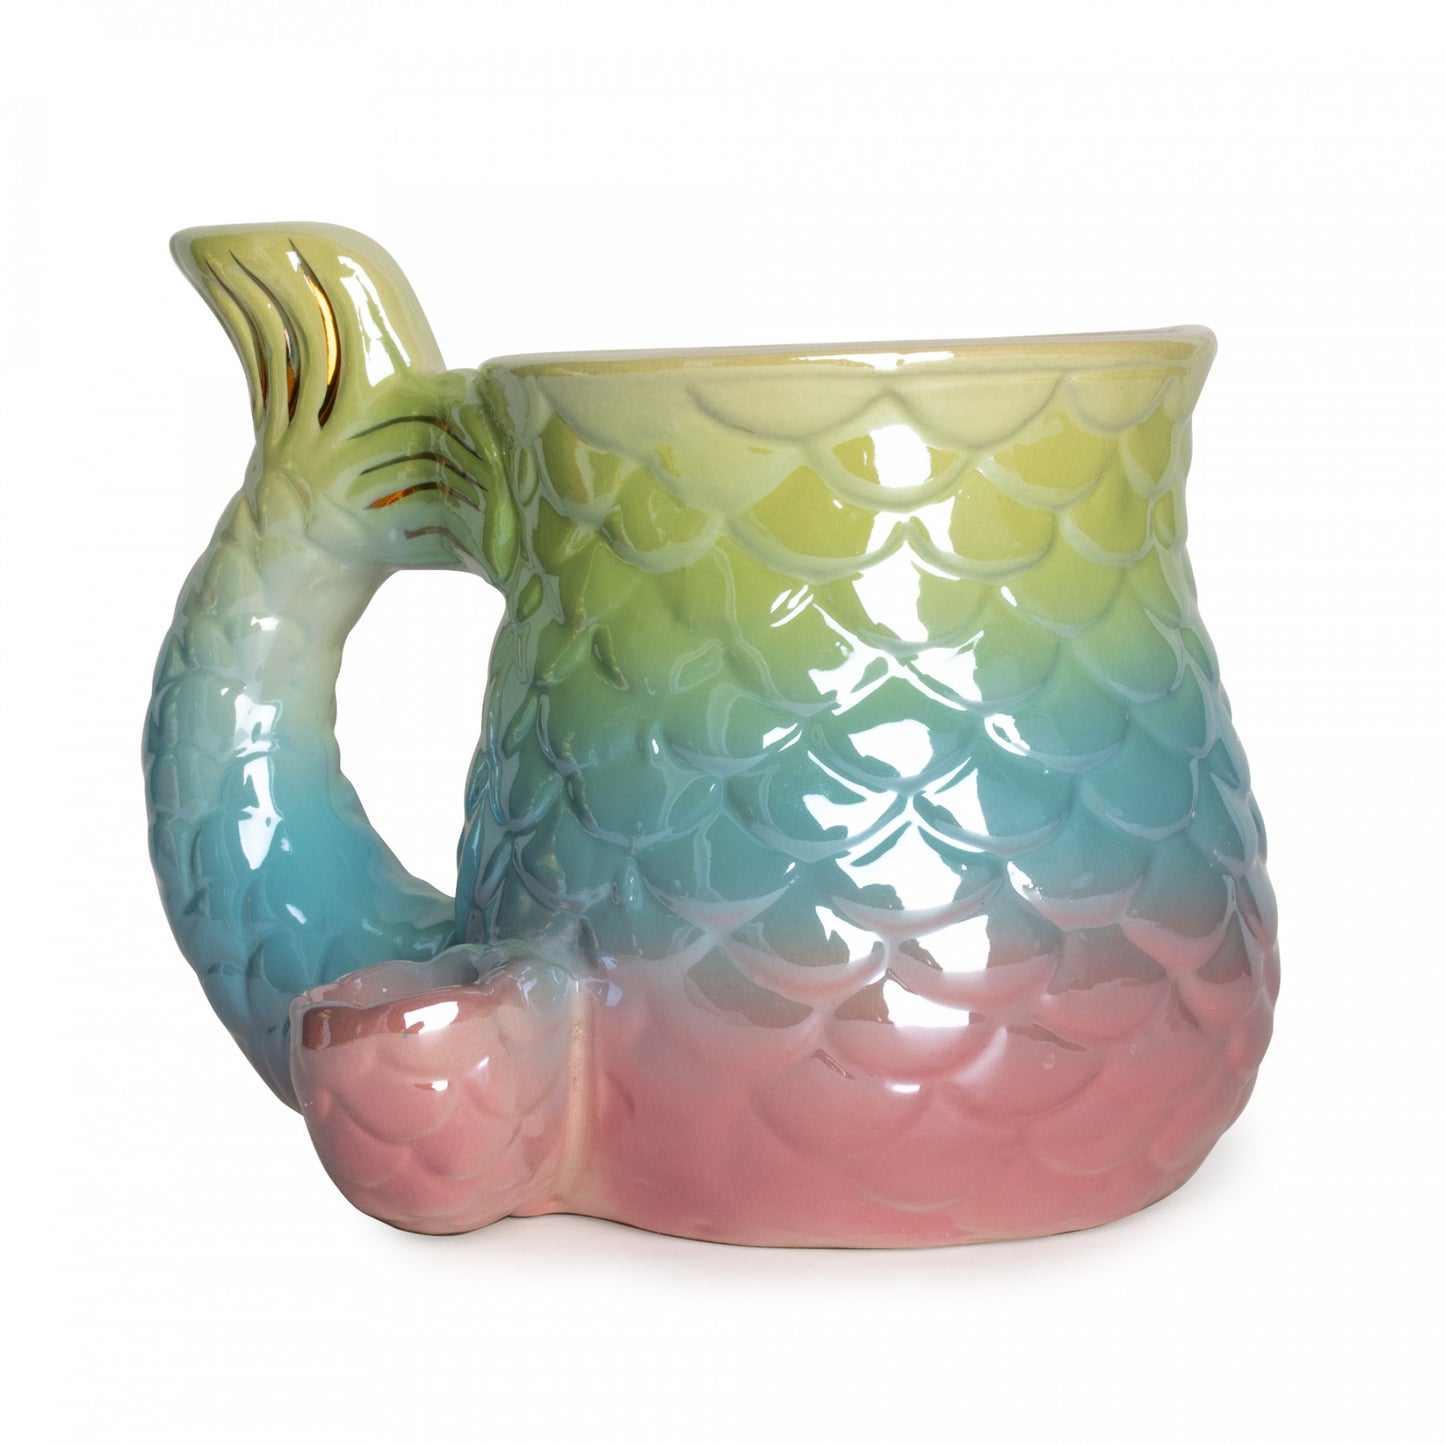 Ceramic mermaid tail mug pipe by fashioncraft